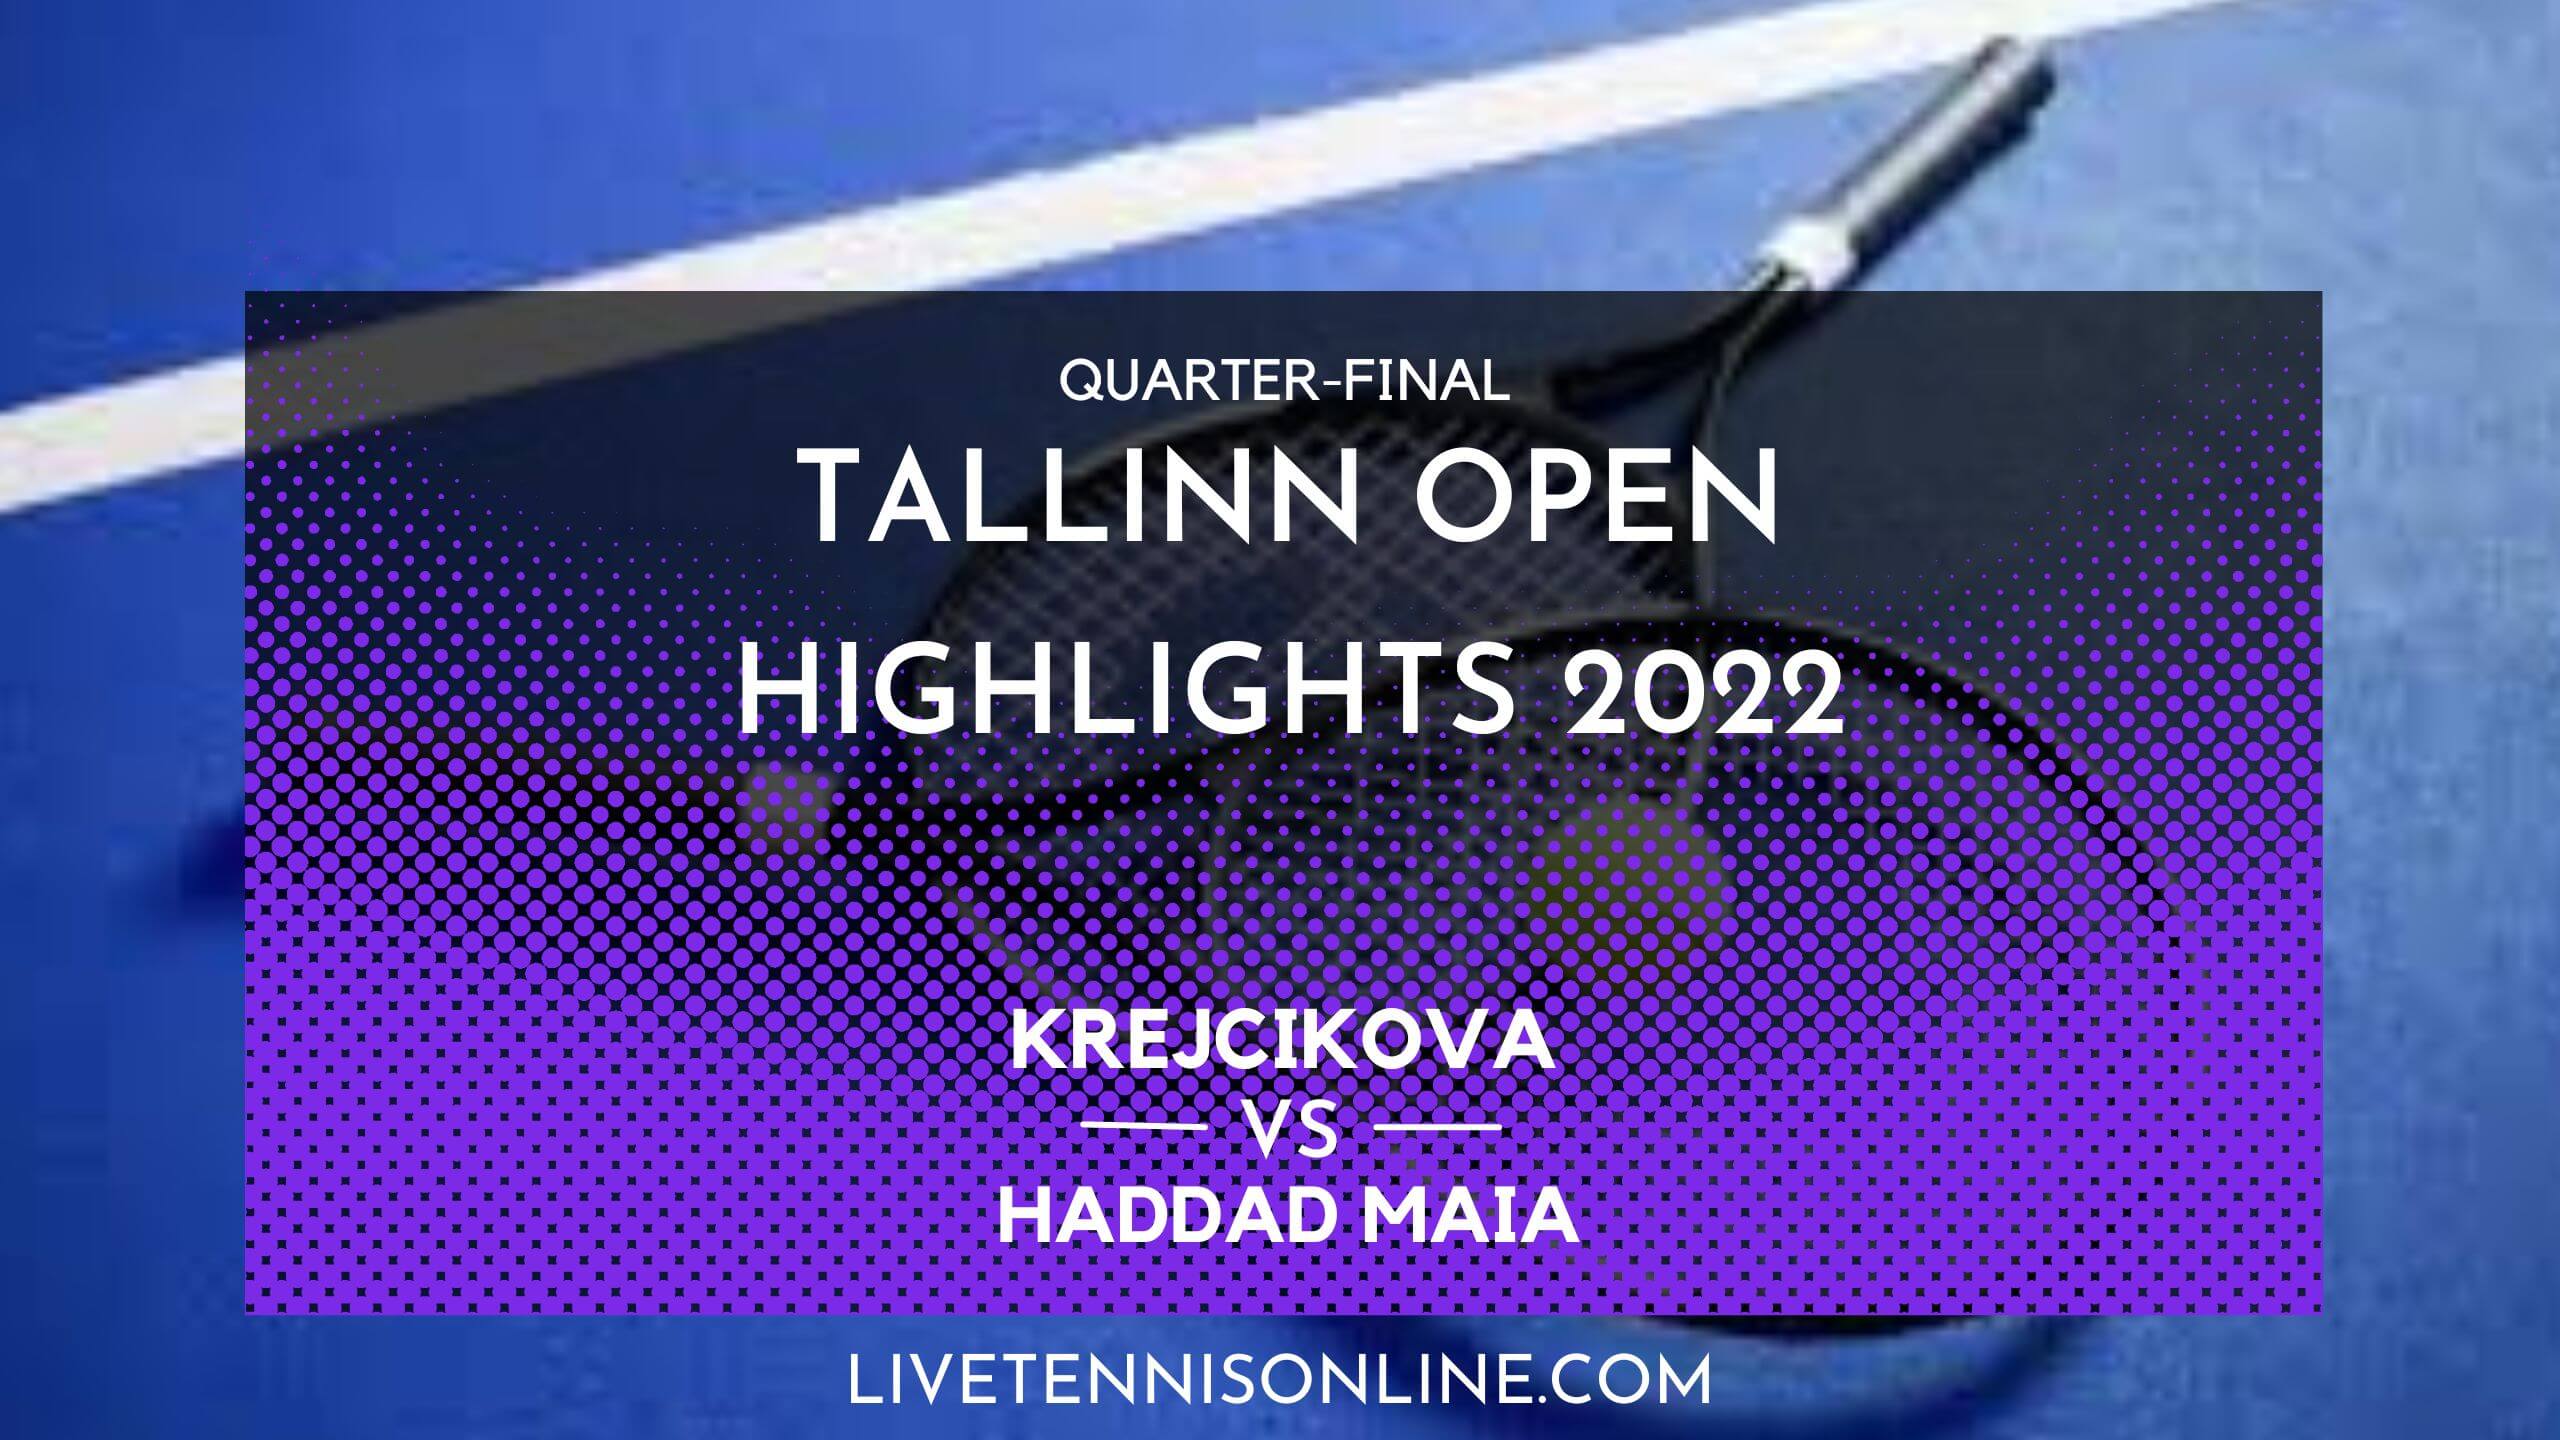 Krejcikova Vs Haddad Maia QF Highlights 2022 Tallinn Open